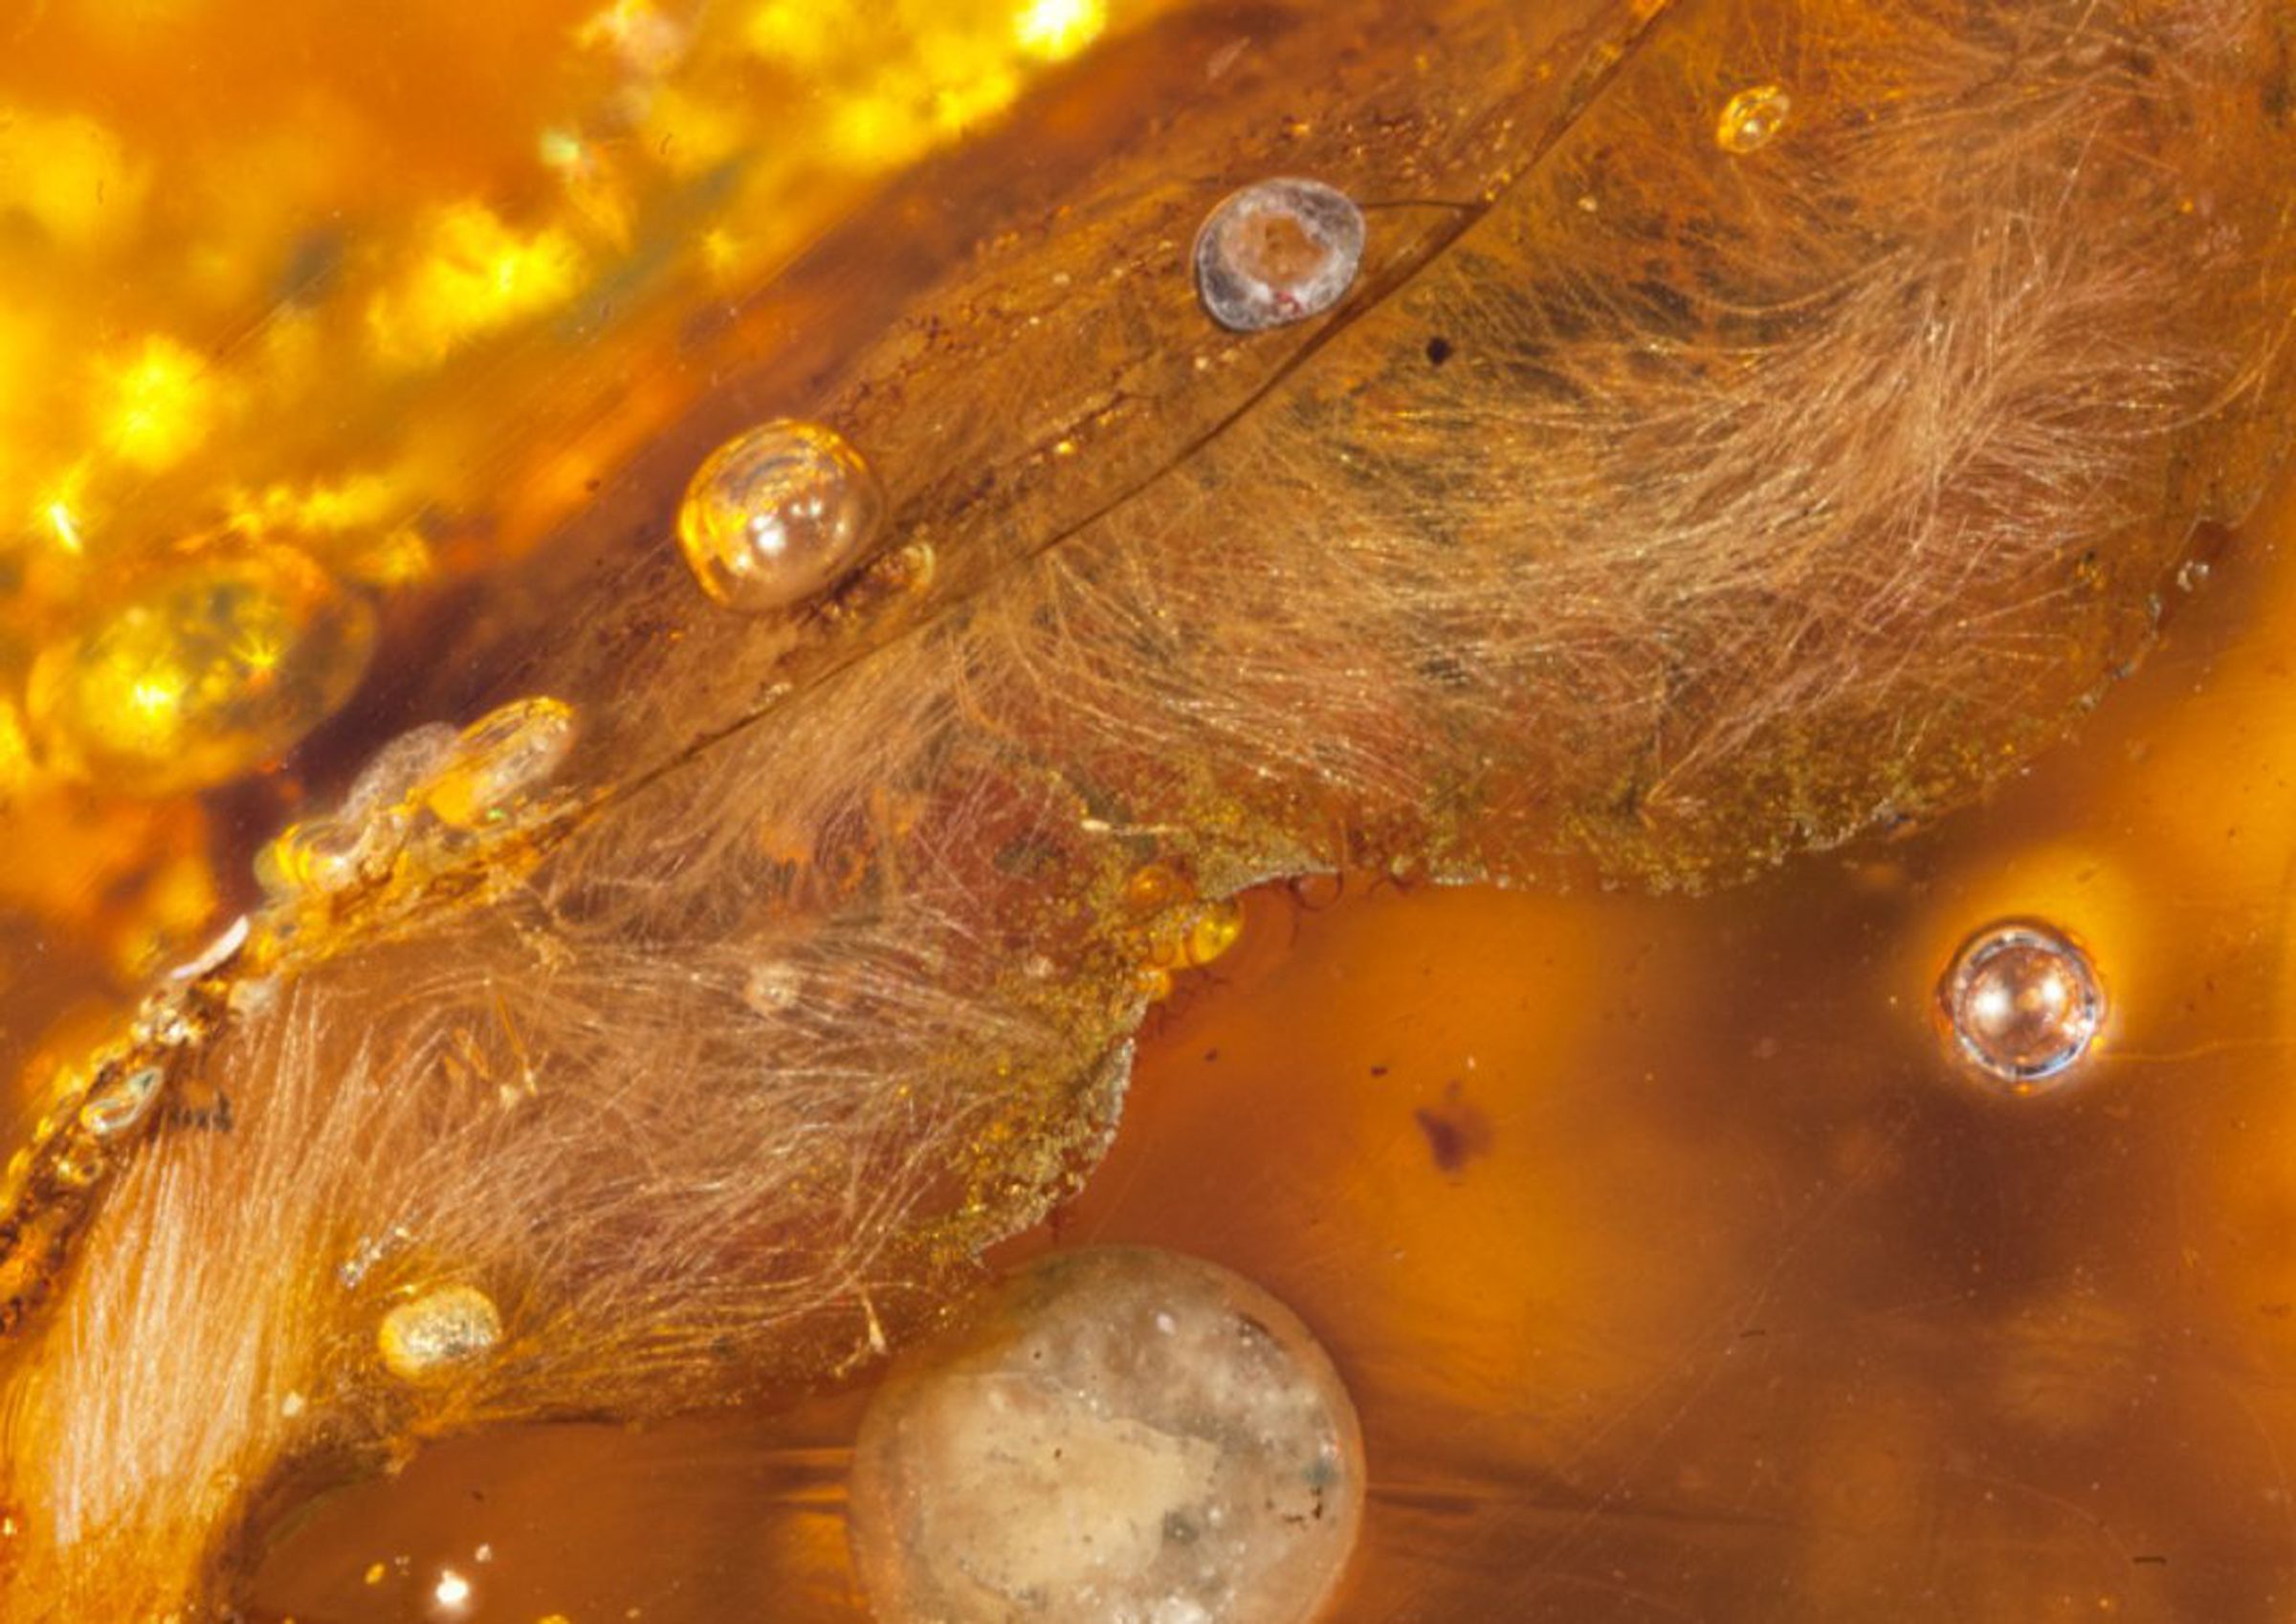 Dinosaur-era wings preserver in amber